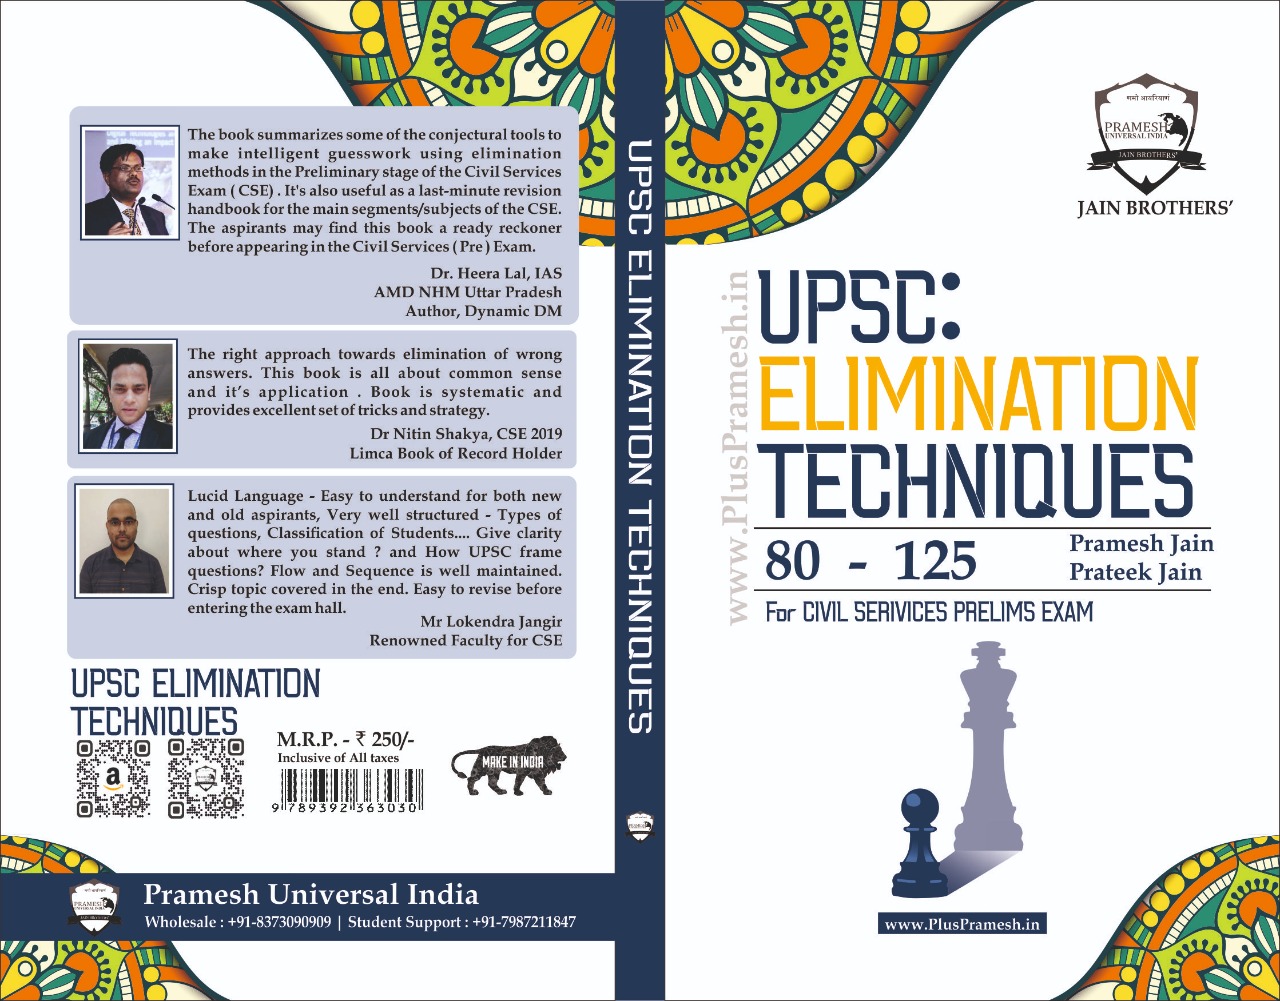 UPSC Elimination Techniques Book